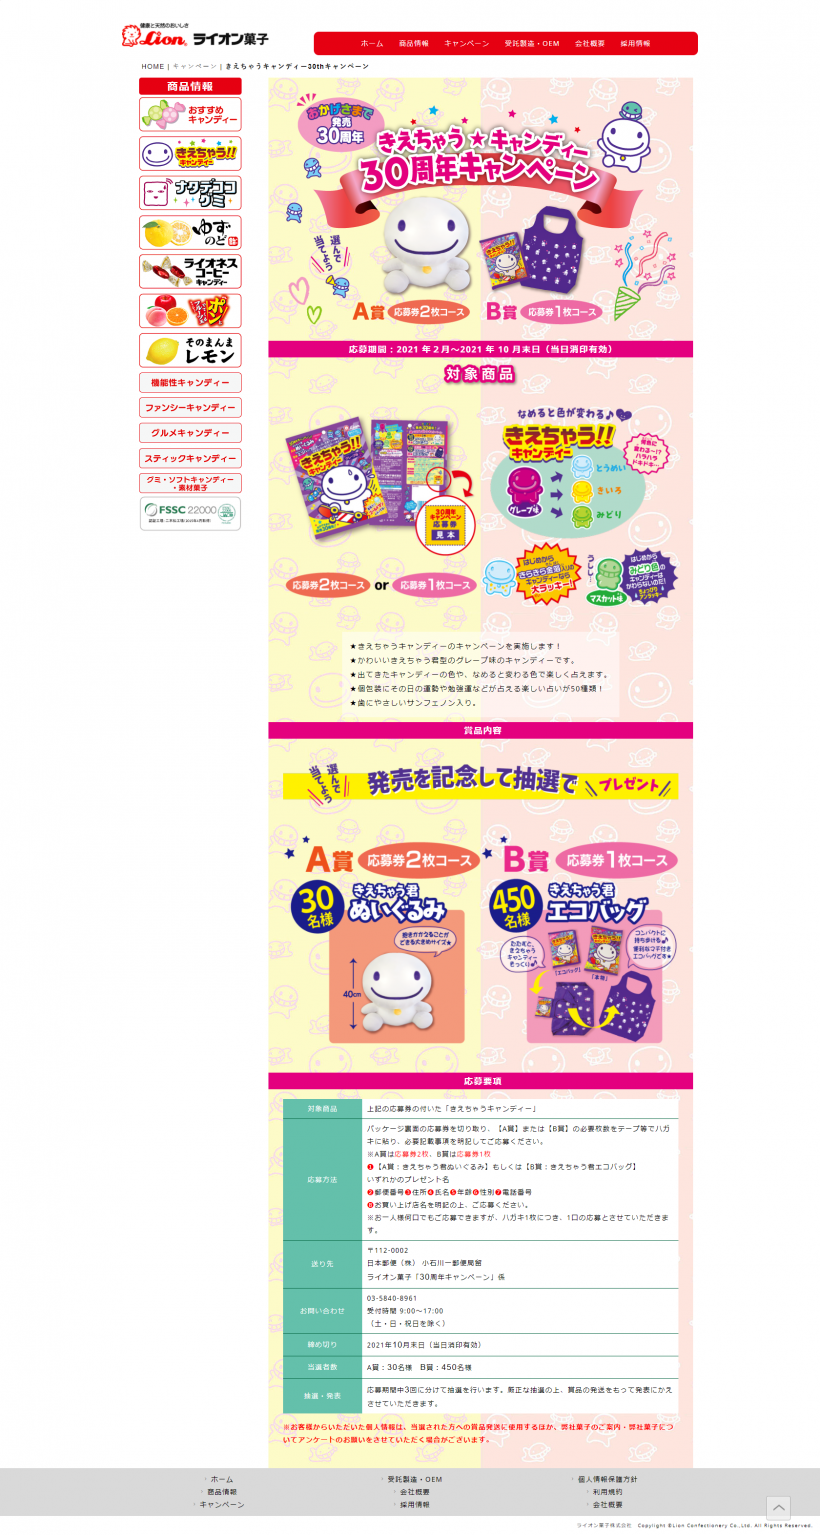 ライオン菓子株式会社 きえちゃうキャンディー30周年キャンペーン キャンなび Webキャンペーンまとめサイト